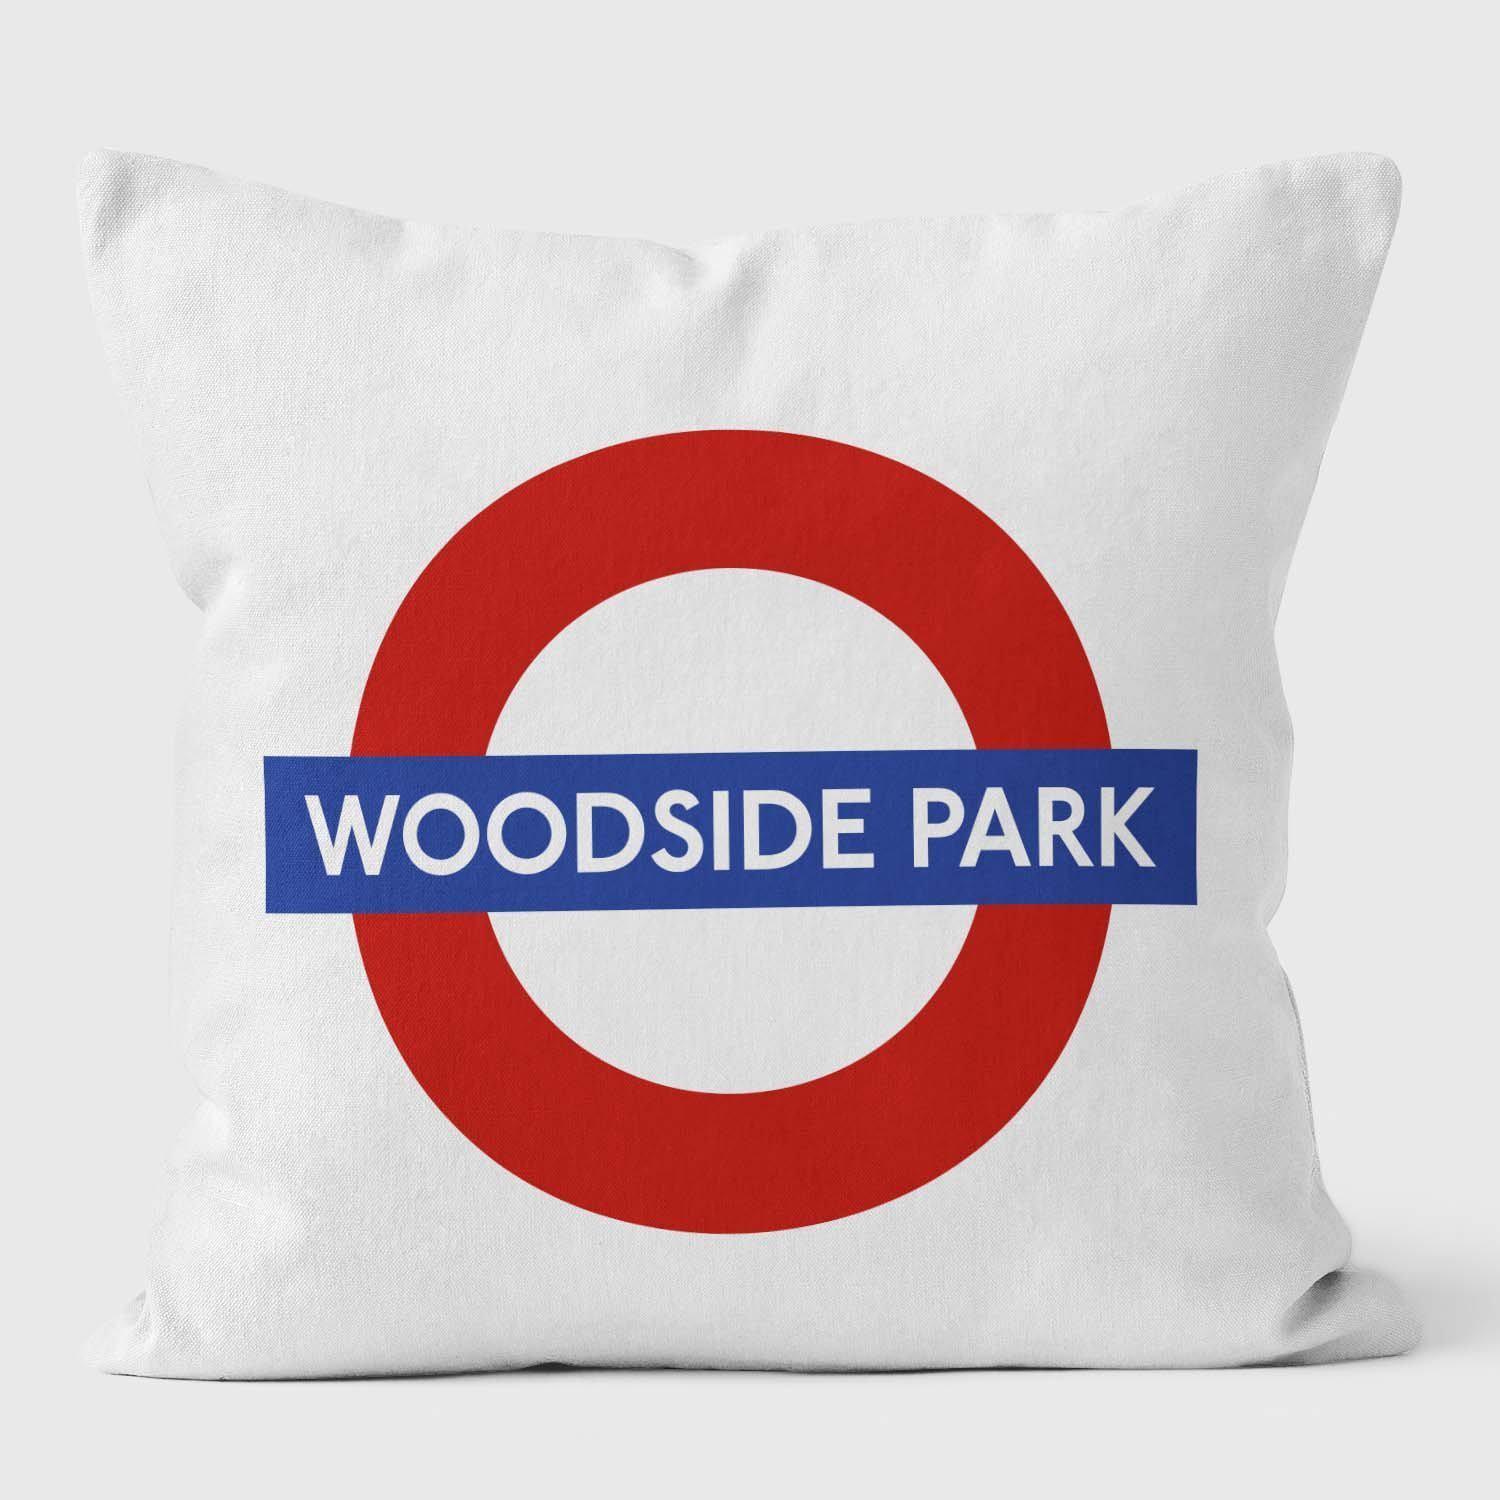 Woodside Park London Underground Tube Station Roundel Cushion - Handmade Cushions UK - WeLoveCushions